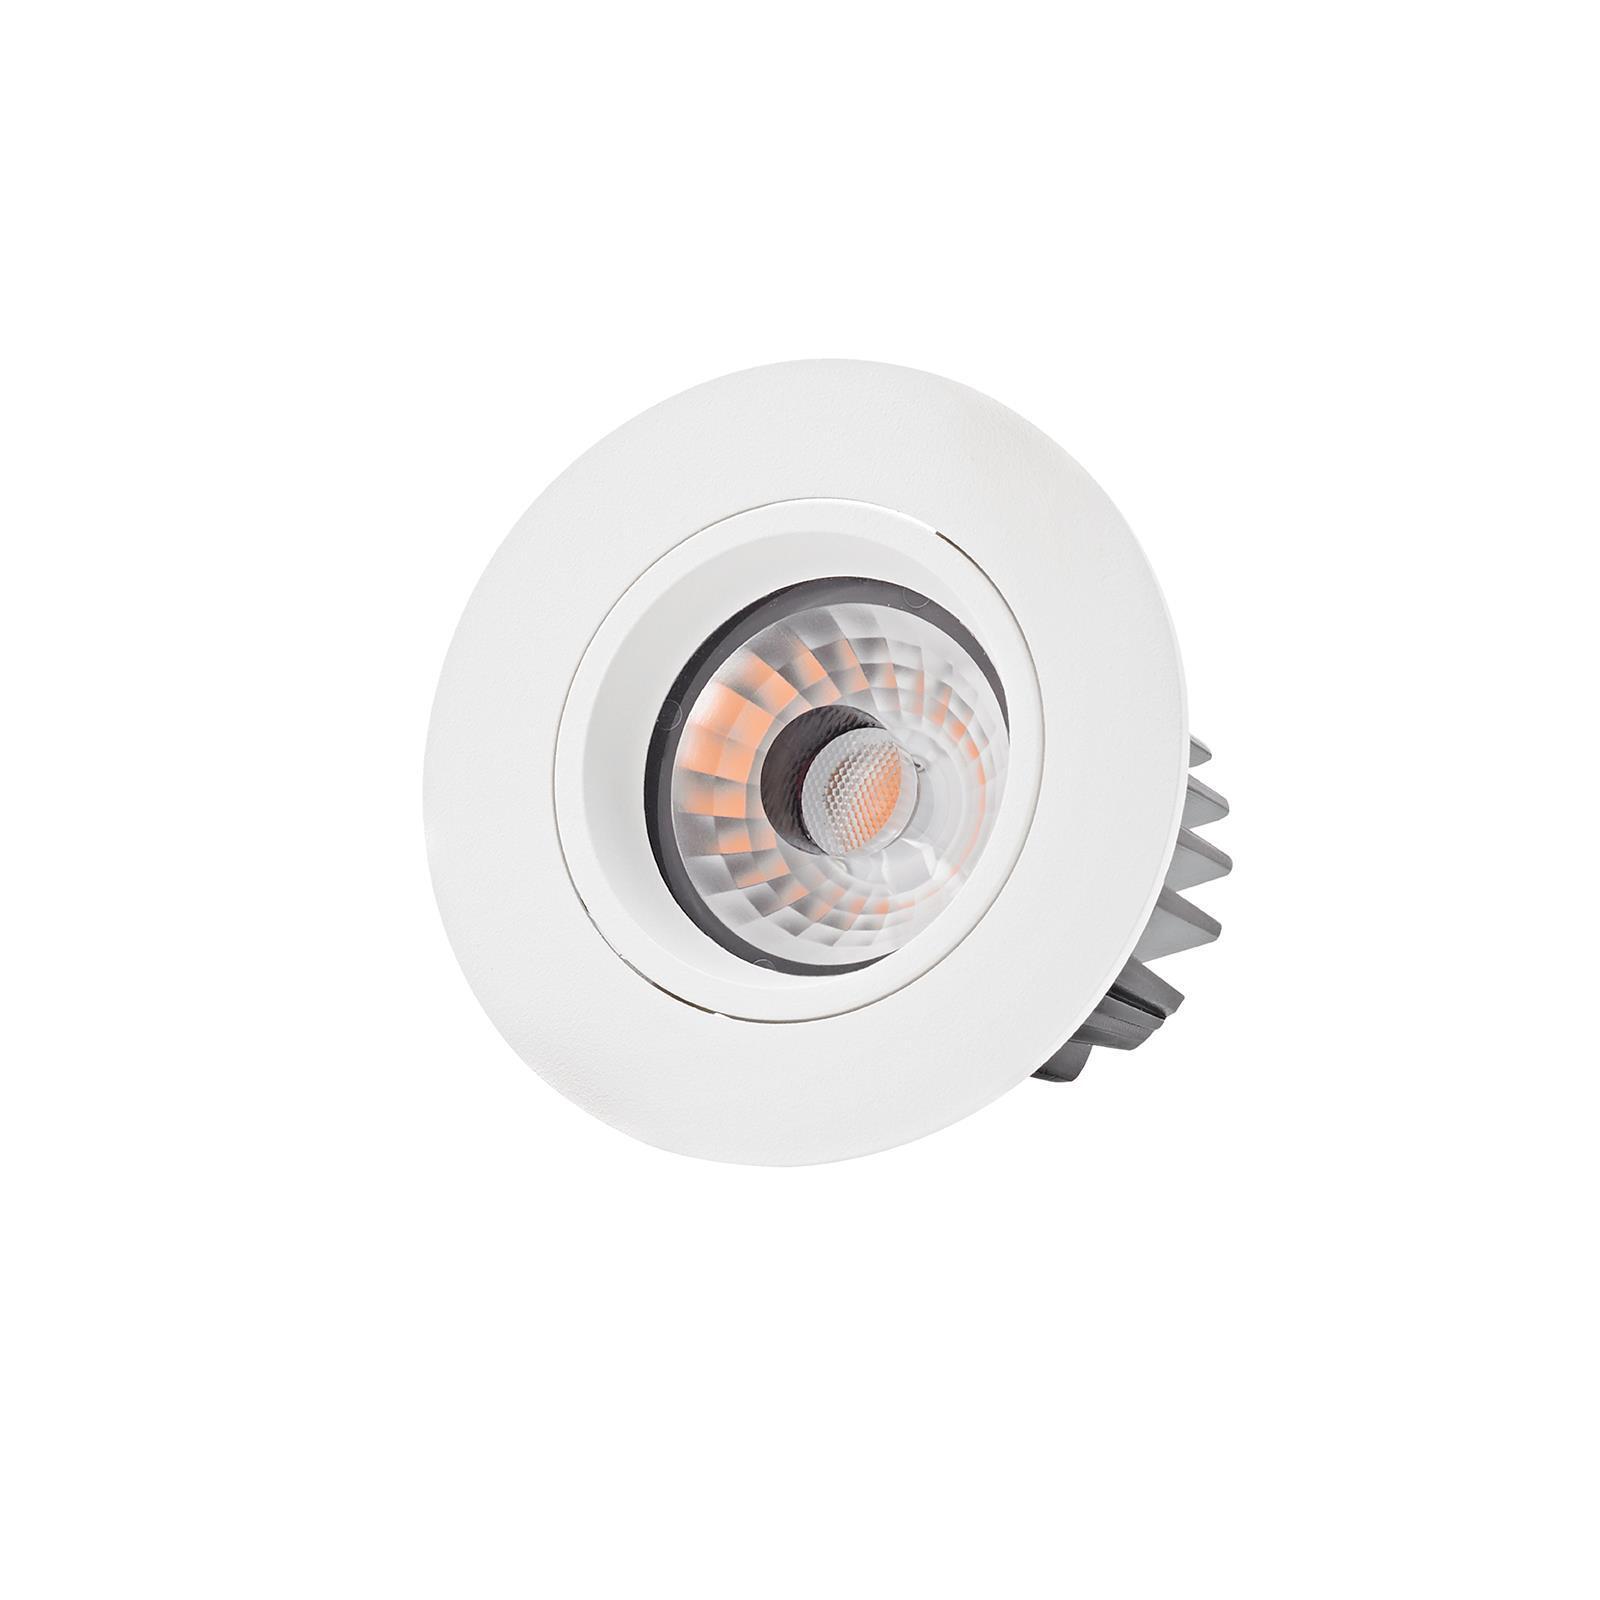 LED Einbaustrahler Argent weiß 230V - warmweiß 2700K Leuchten 36° rund 9W dimmbar Lampen & Onlineshop CRI>93